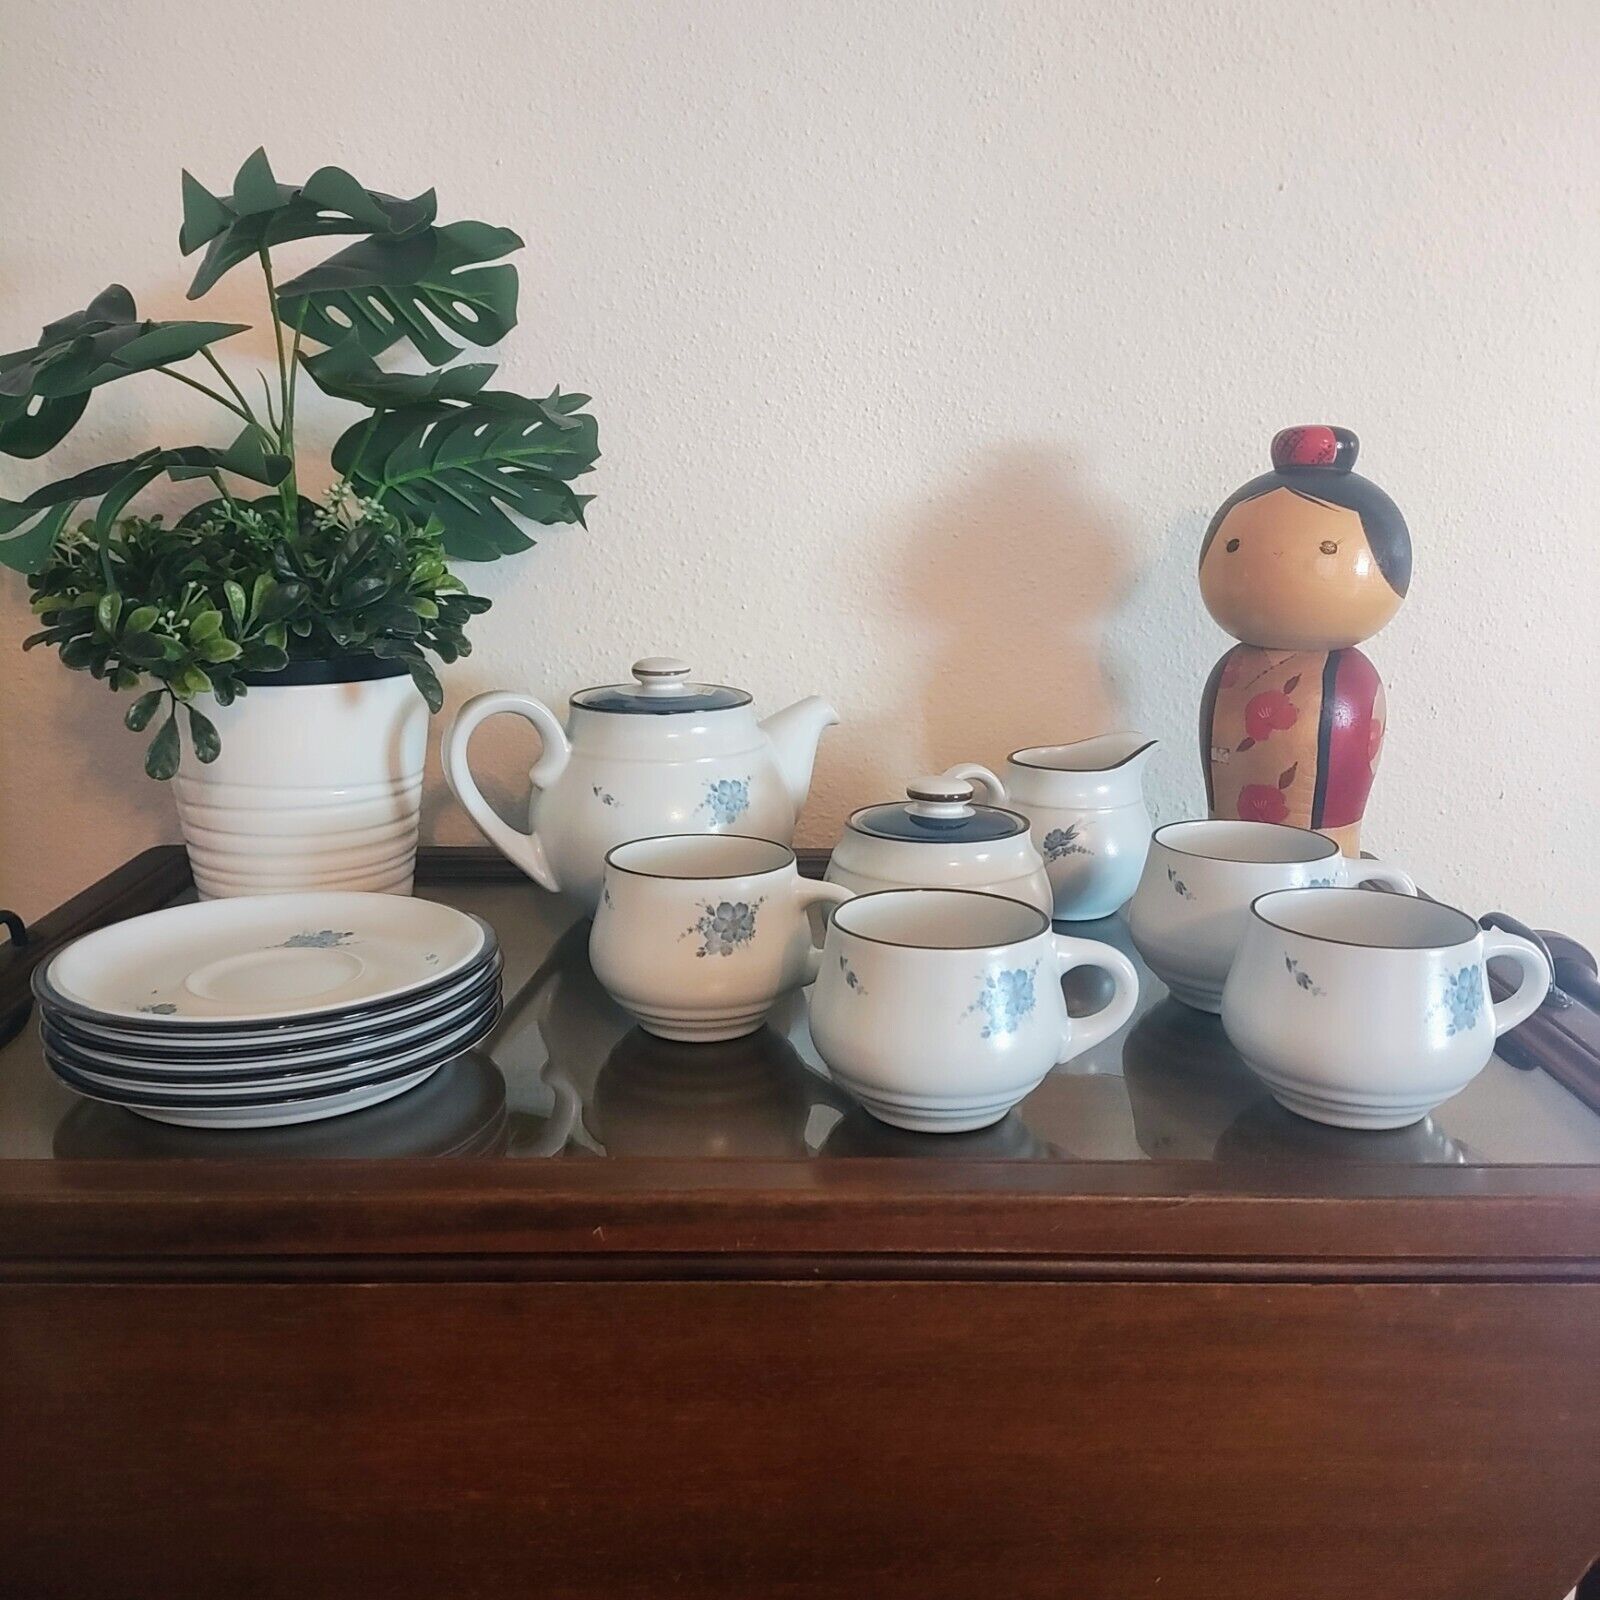 Noritake Rare Vintage Stoneware Tea Set Teacups Saucers Sugar Bowl Tea Kettle